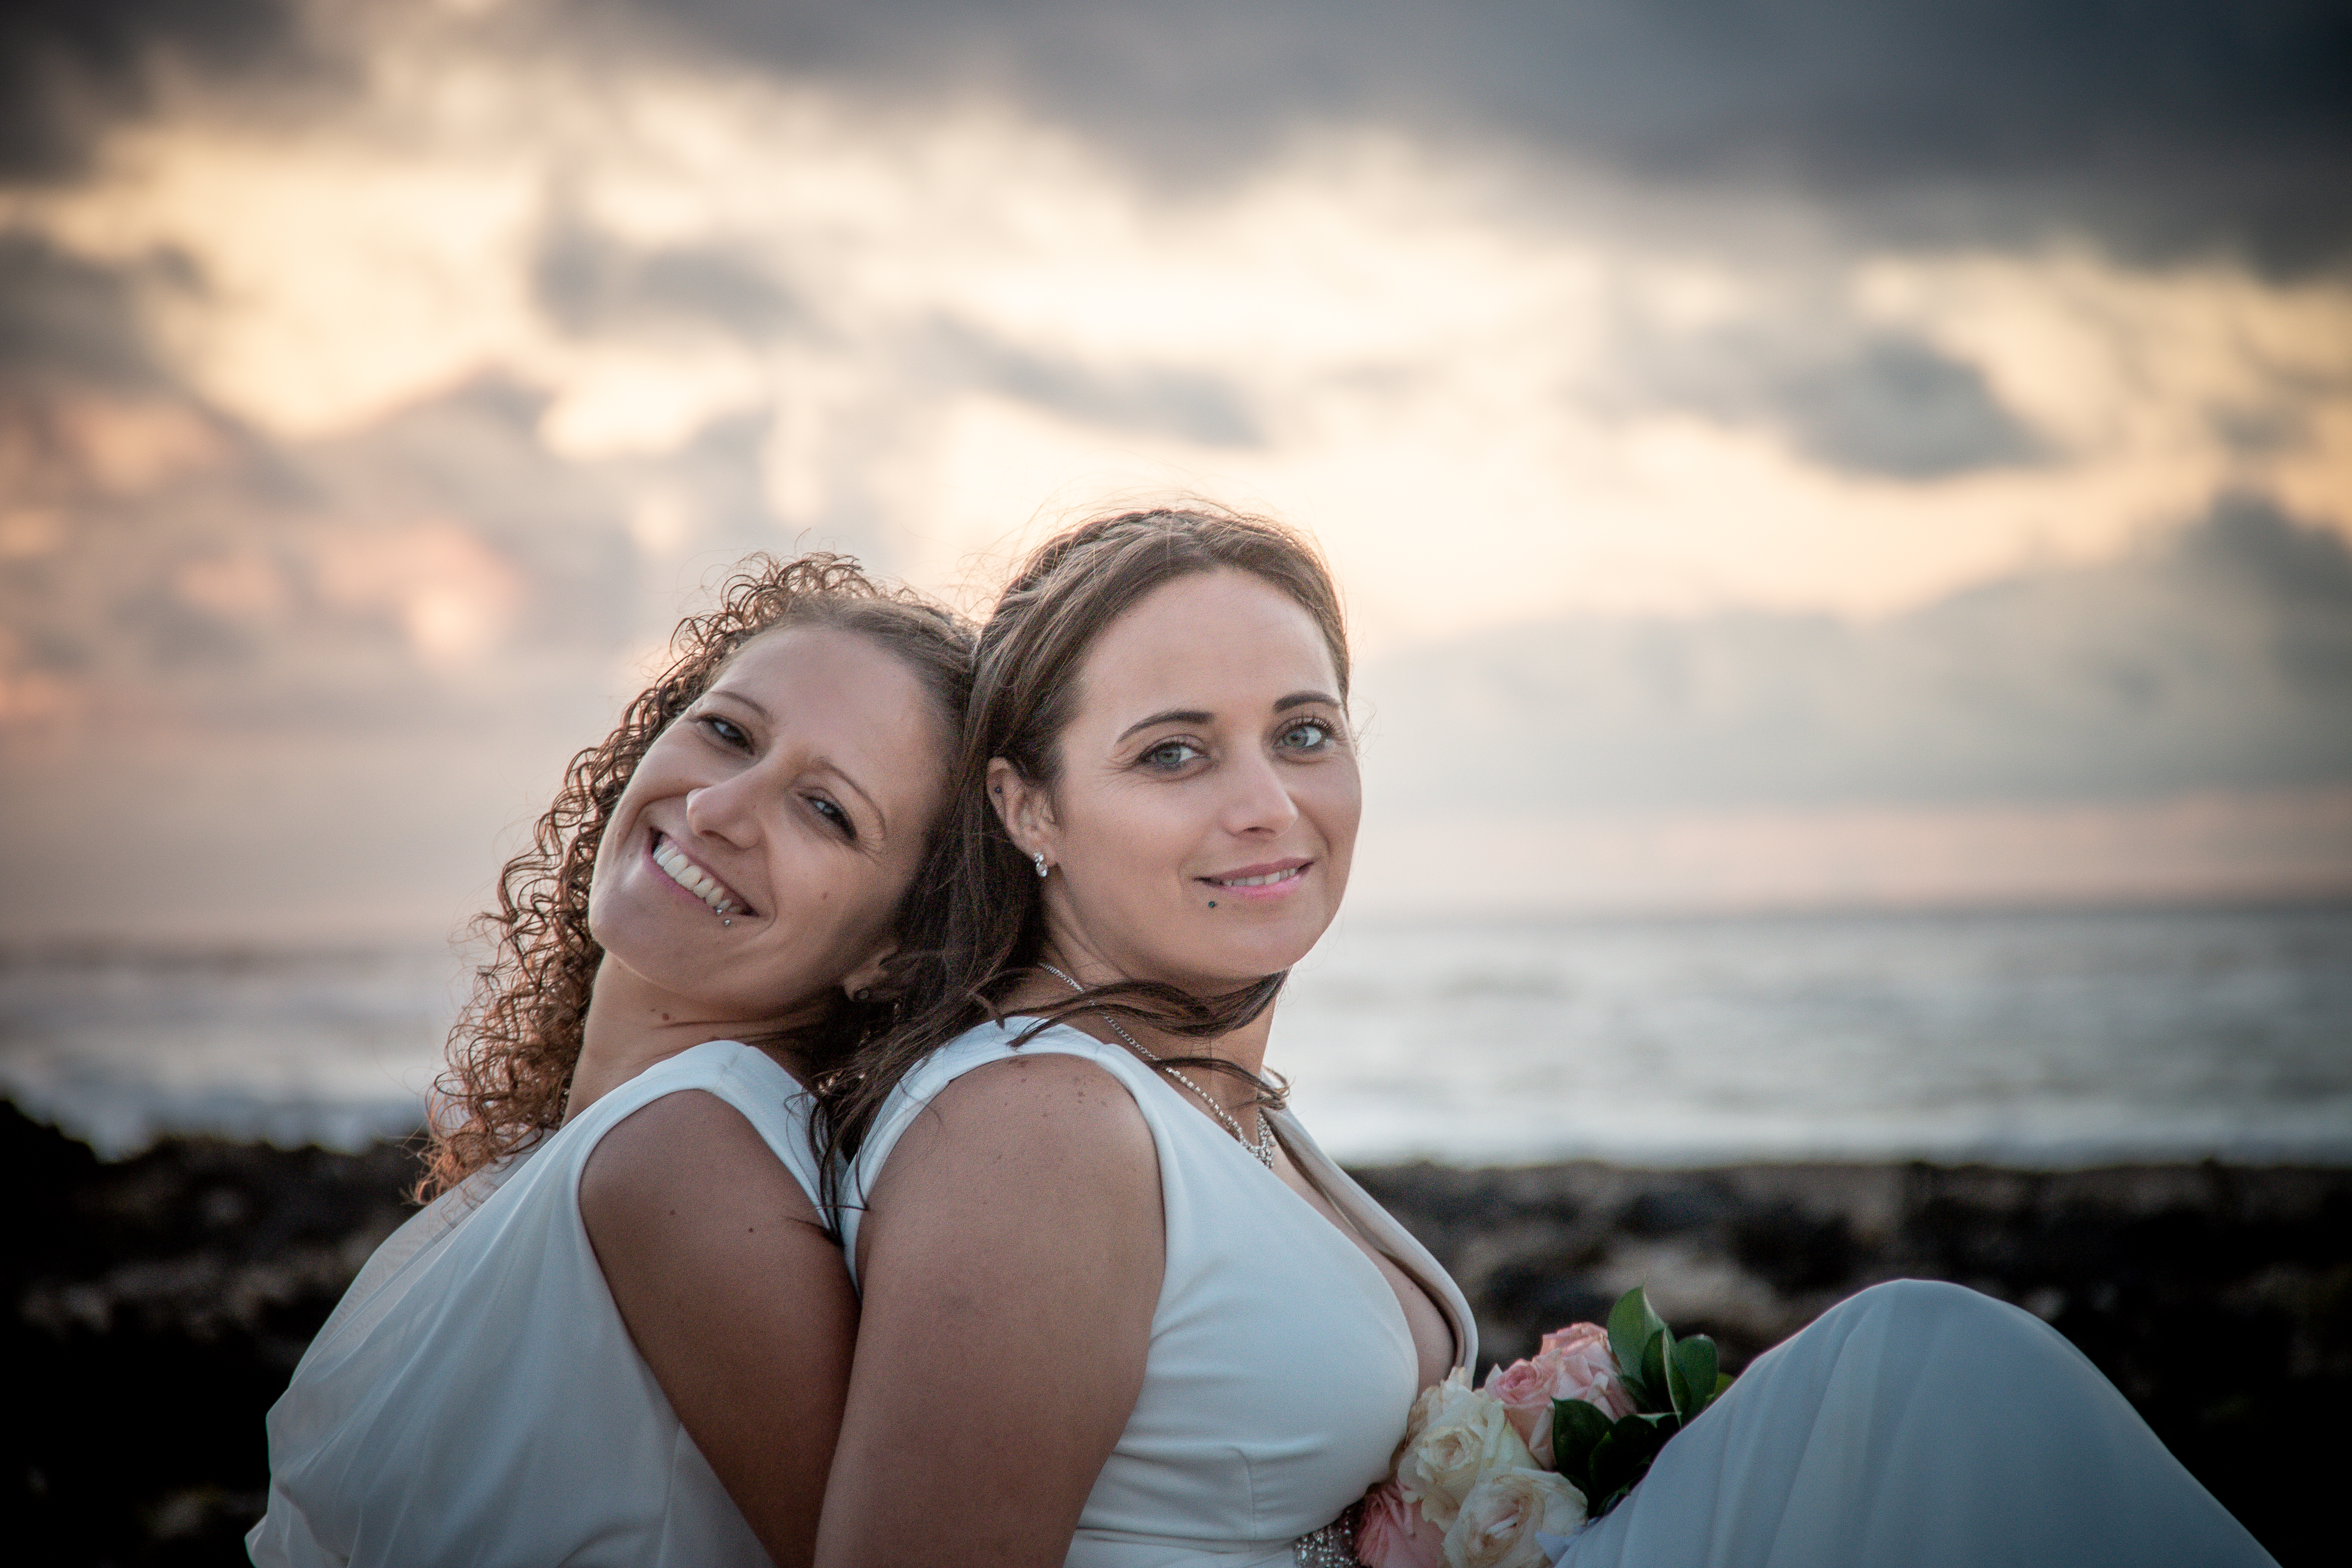 Wedding photographer Fuerteventura Lanzarote fotografo de bodas